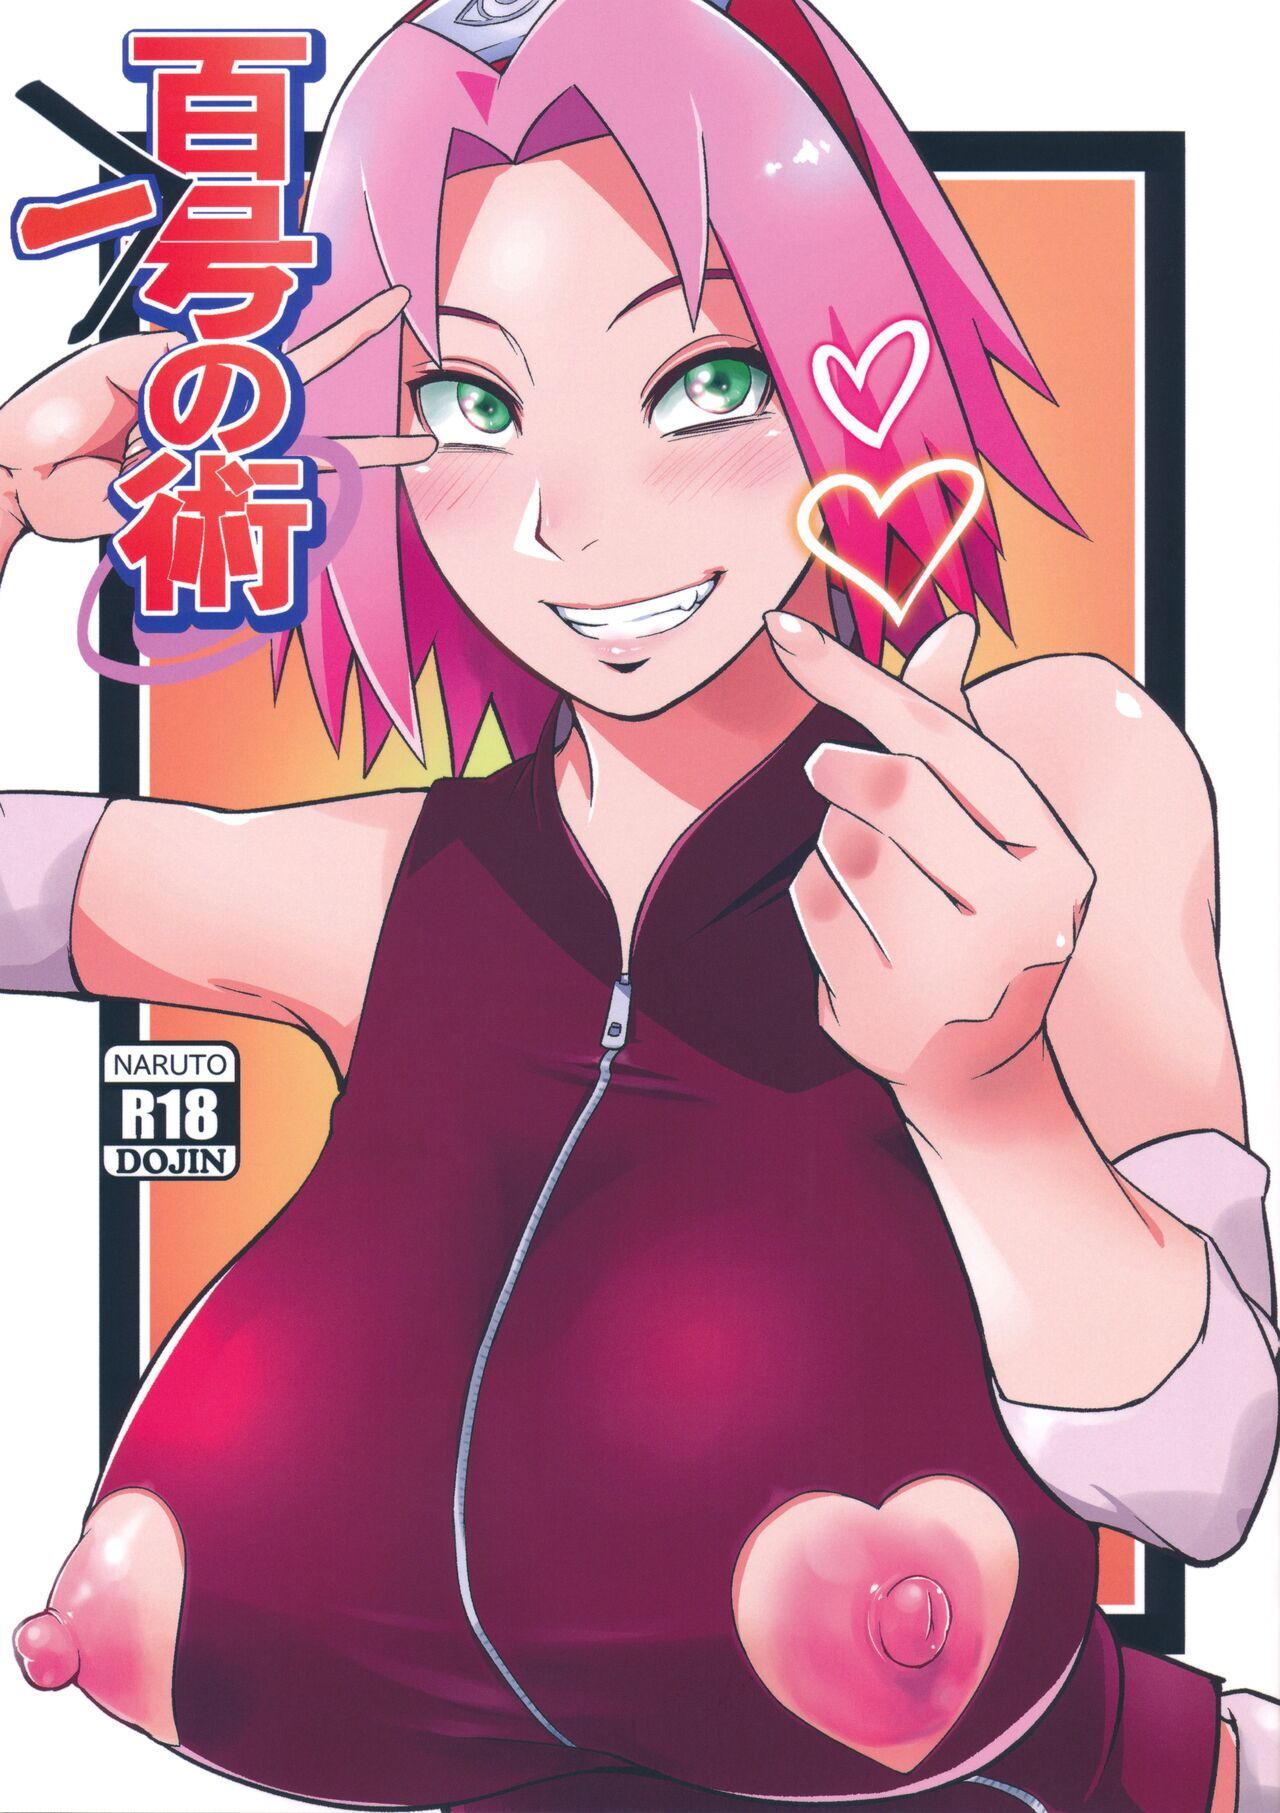 Sakura manga hentai